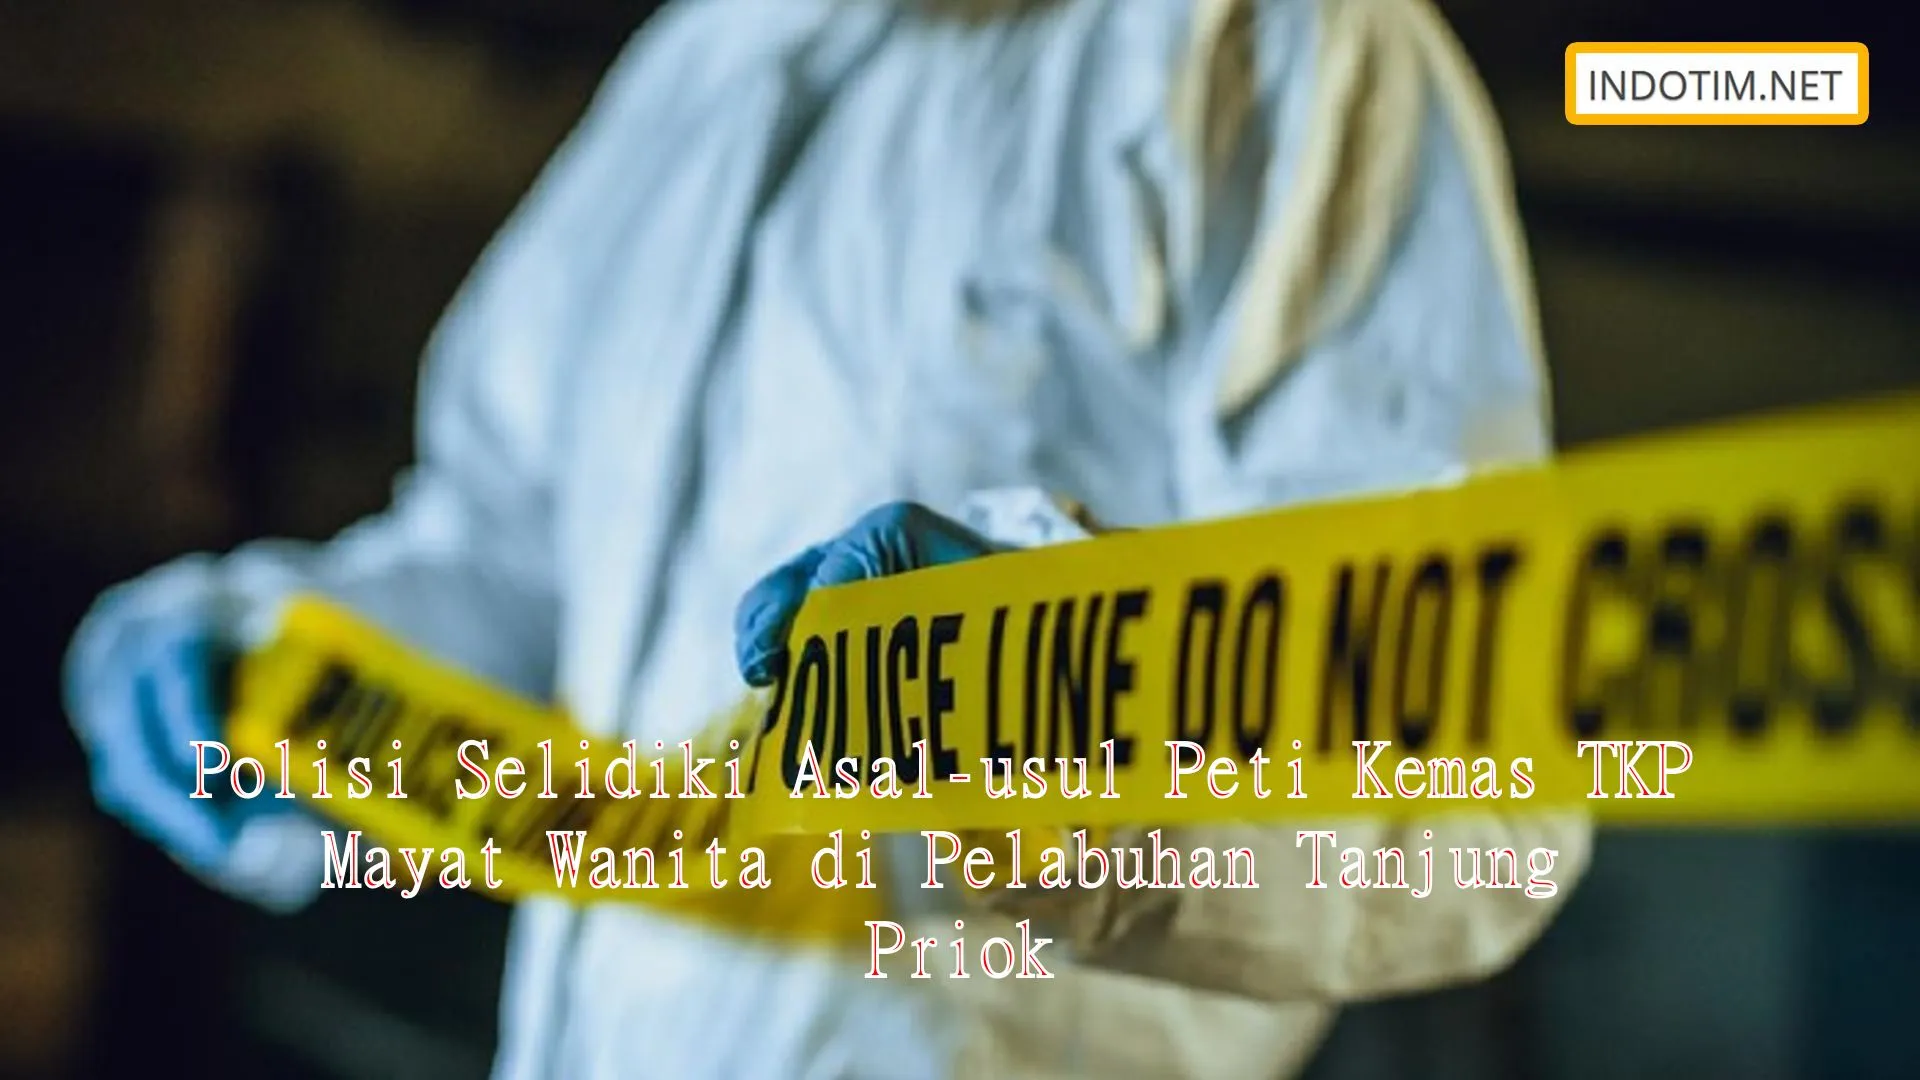 Polisi Selidiki Asal-usul Peti Kemas TKP Mayat Wanita di Pelabuhan Tanjung Priok